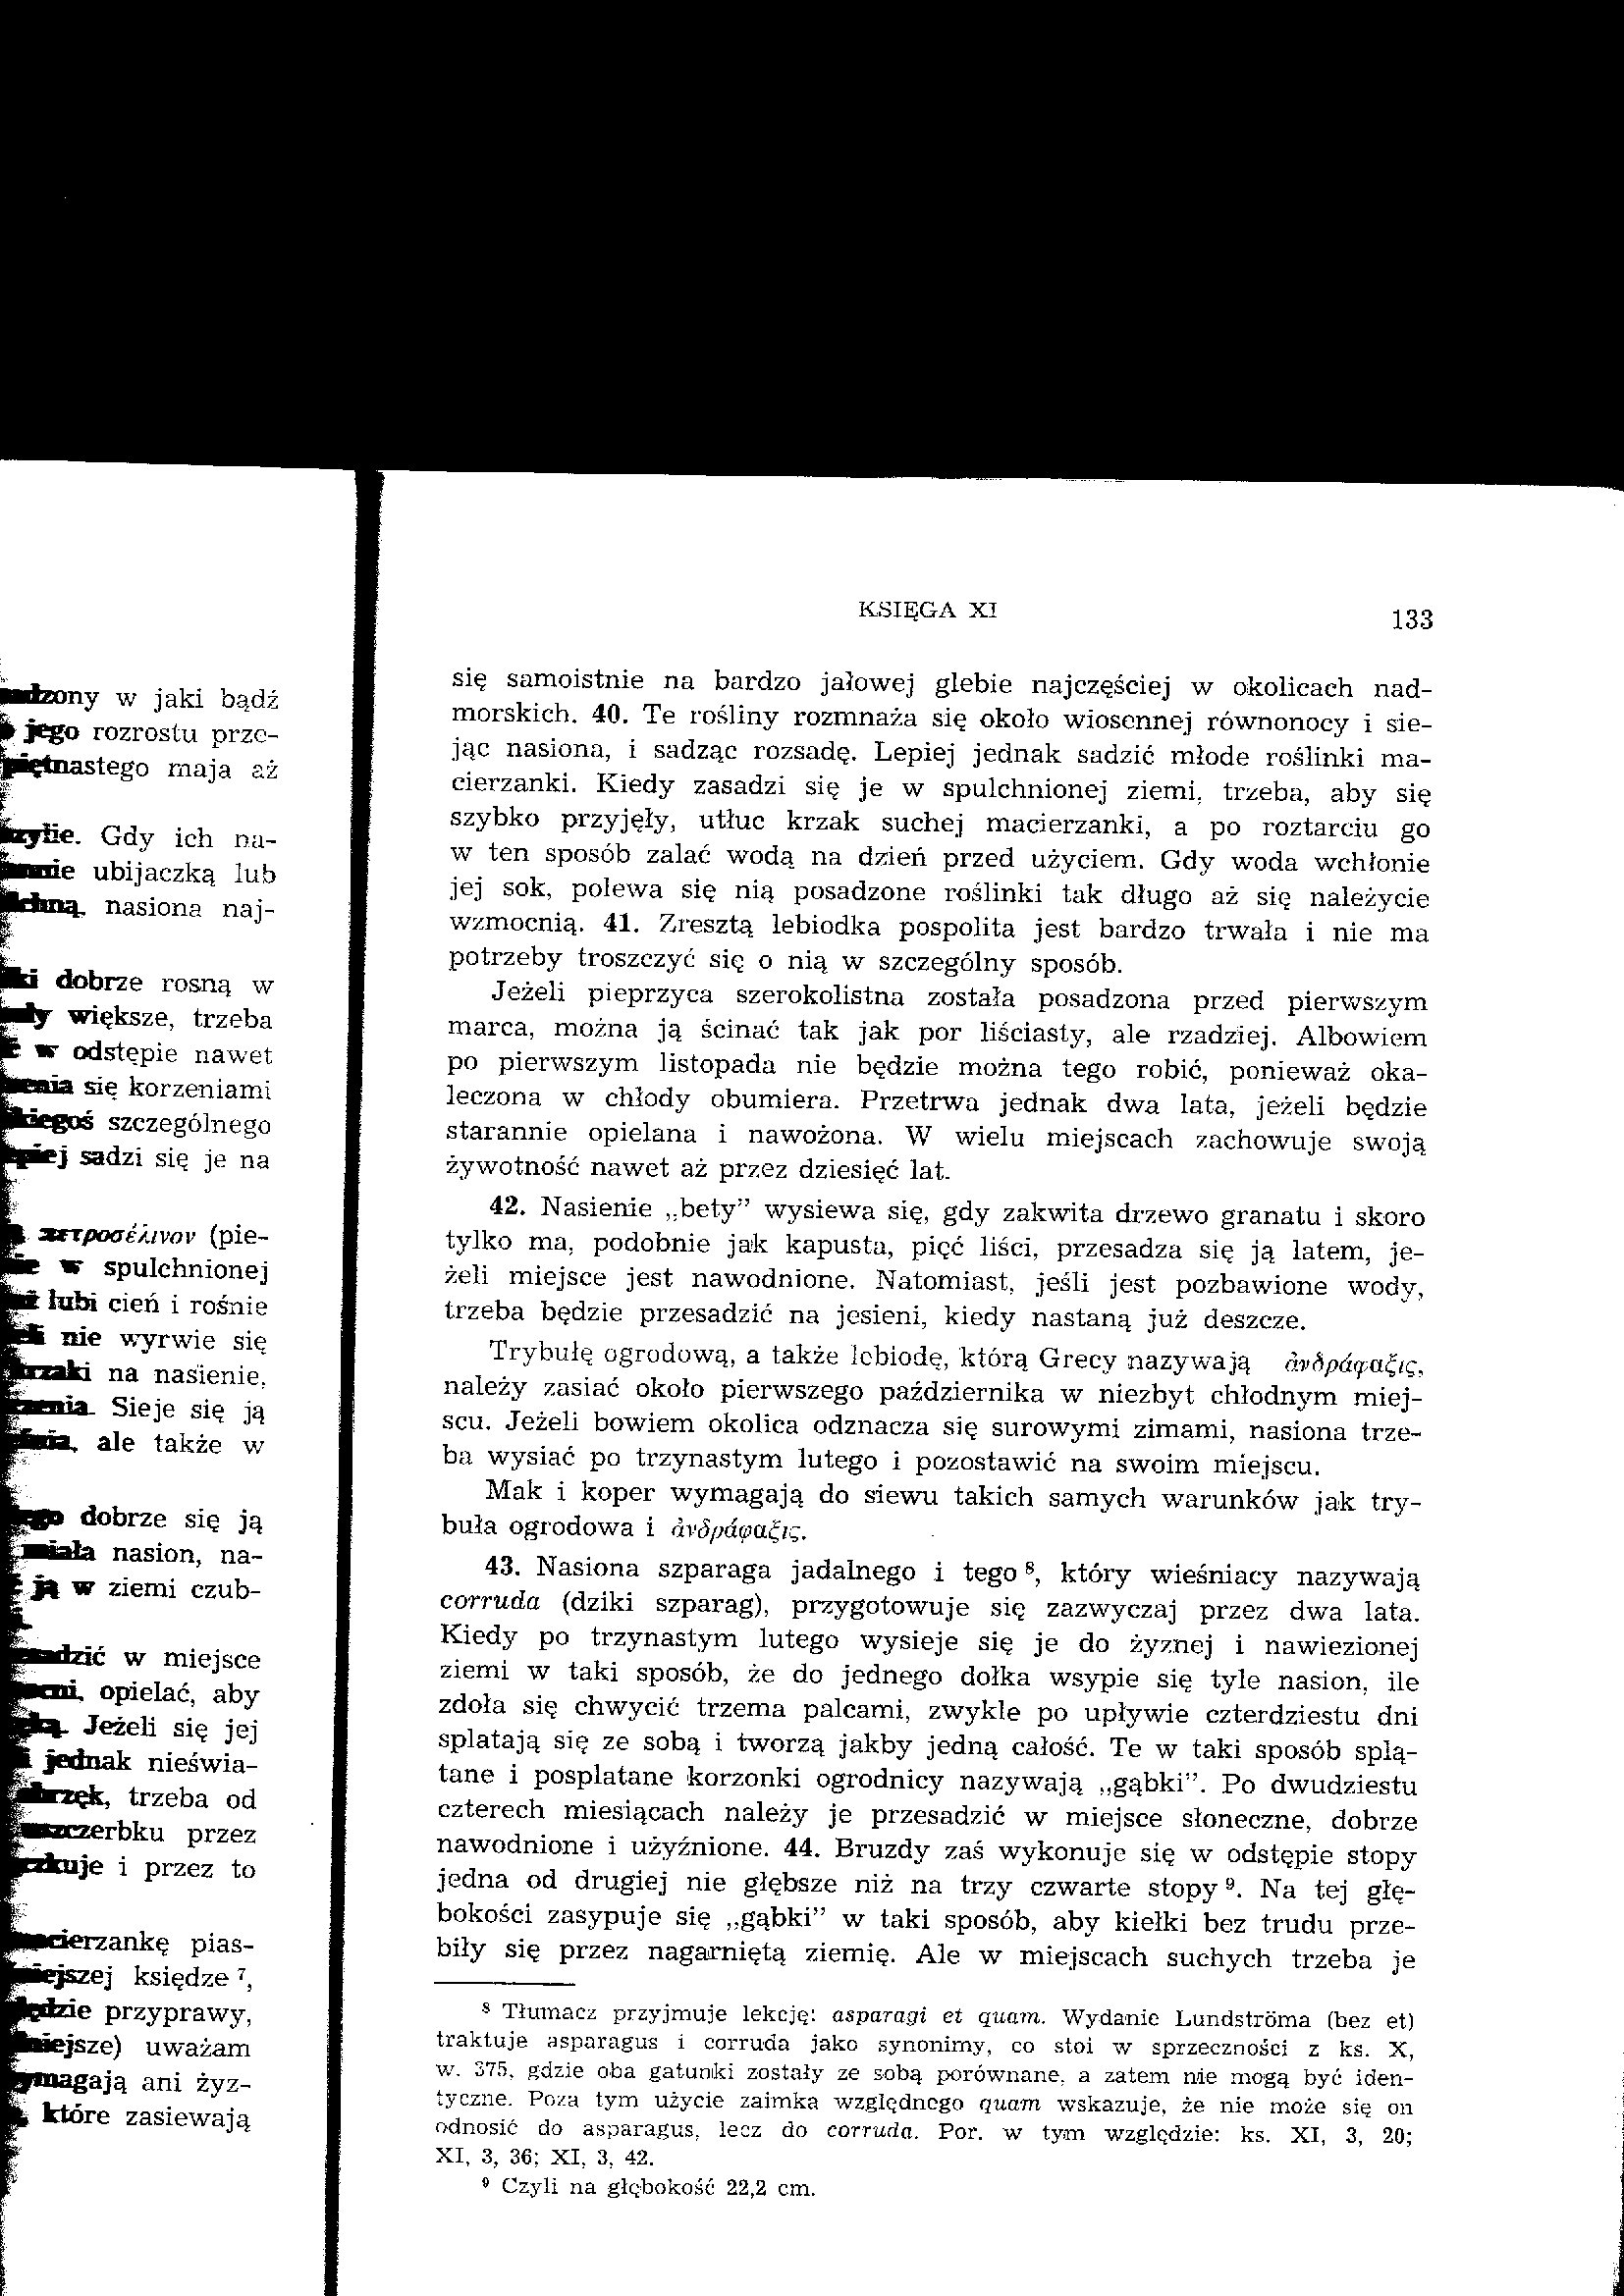 Kolumella - O rolnictwie tom II, Księga o drzewach - Kolumella II 130.jpg